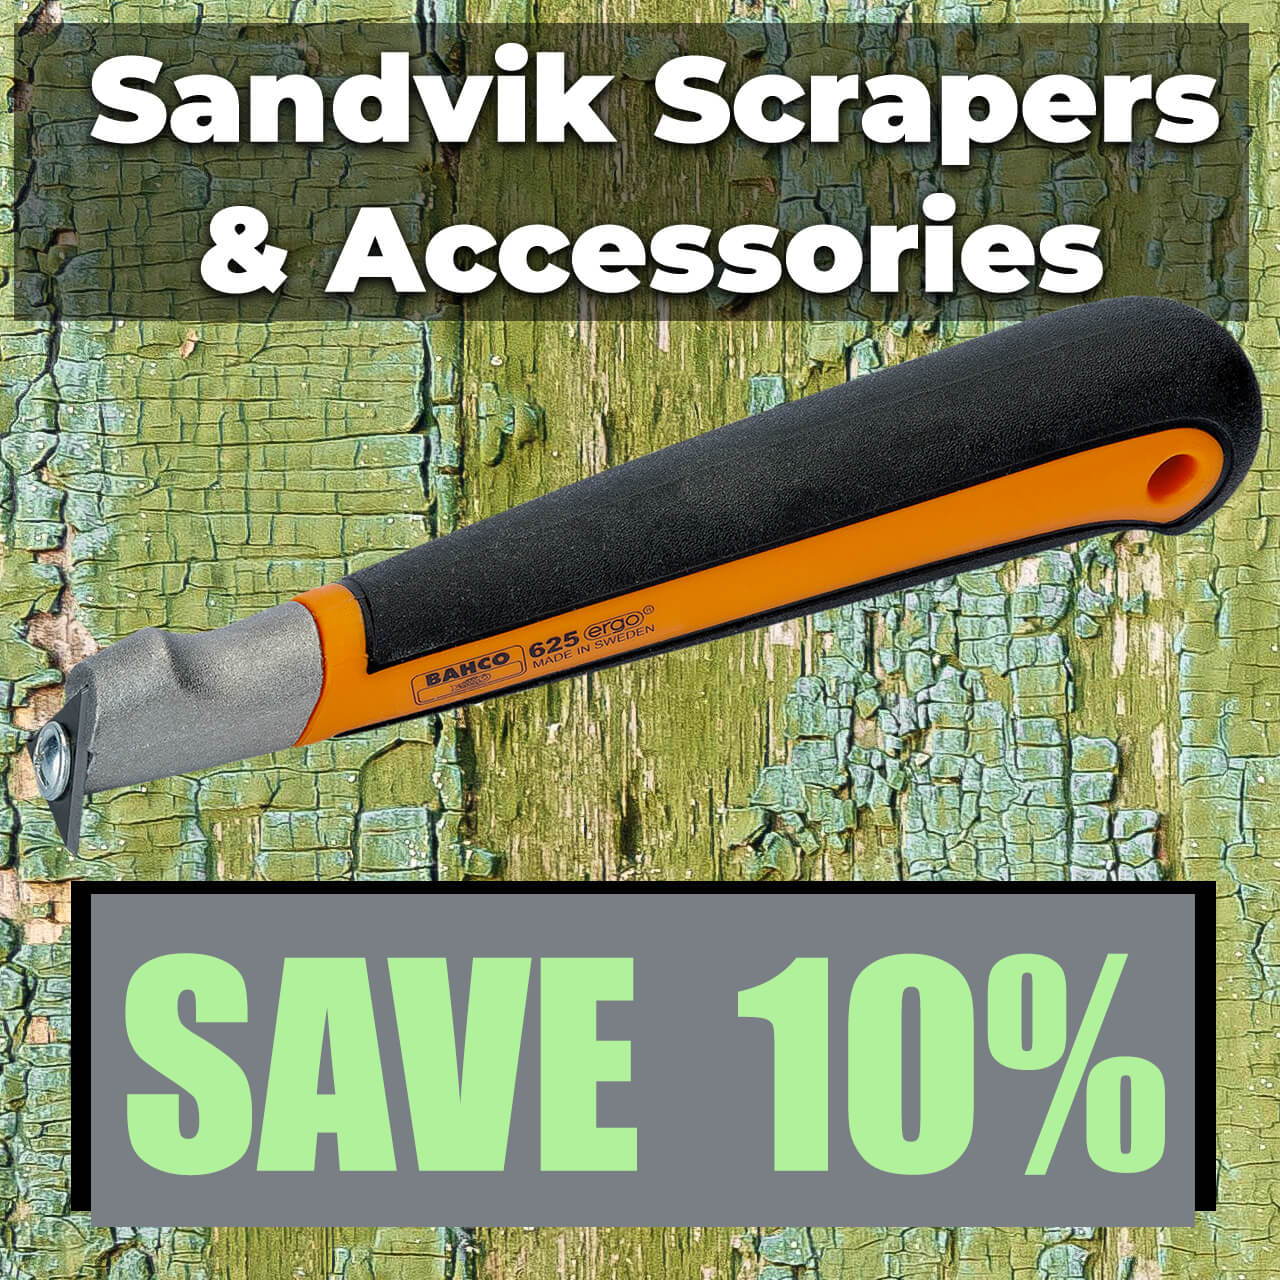 Save 10% on Sandvik Scrapers & Accessories